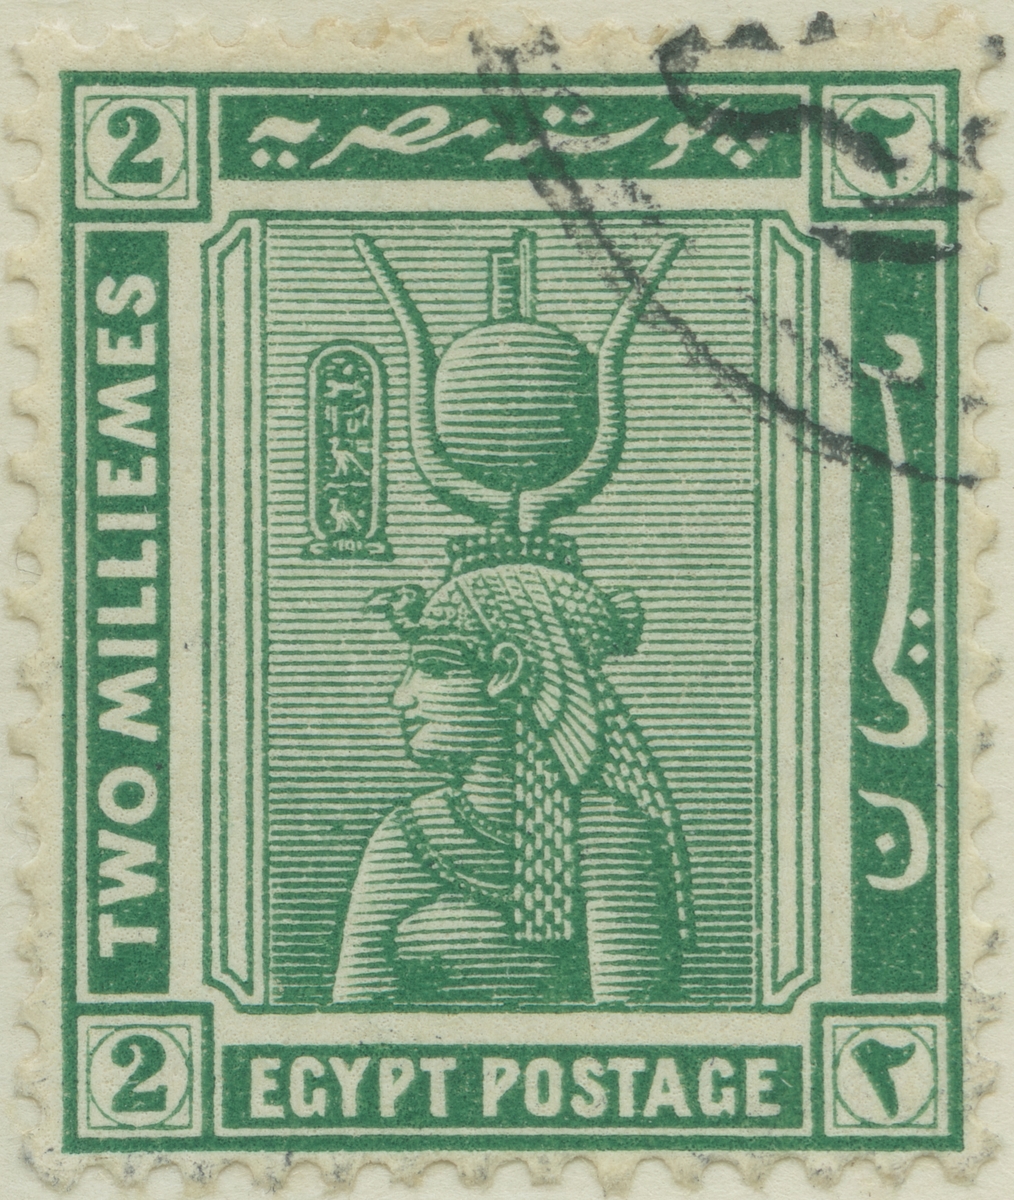 Frimärke ur Gösta Bodmans filatelistiska motivsamling, påbörjad 1950.
Frimärke från Egypten, 1914. Motiv av gudinnan "Hathor", farao Kleopatra VII